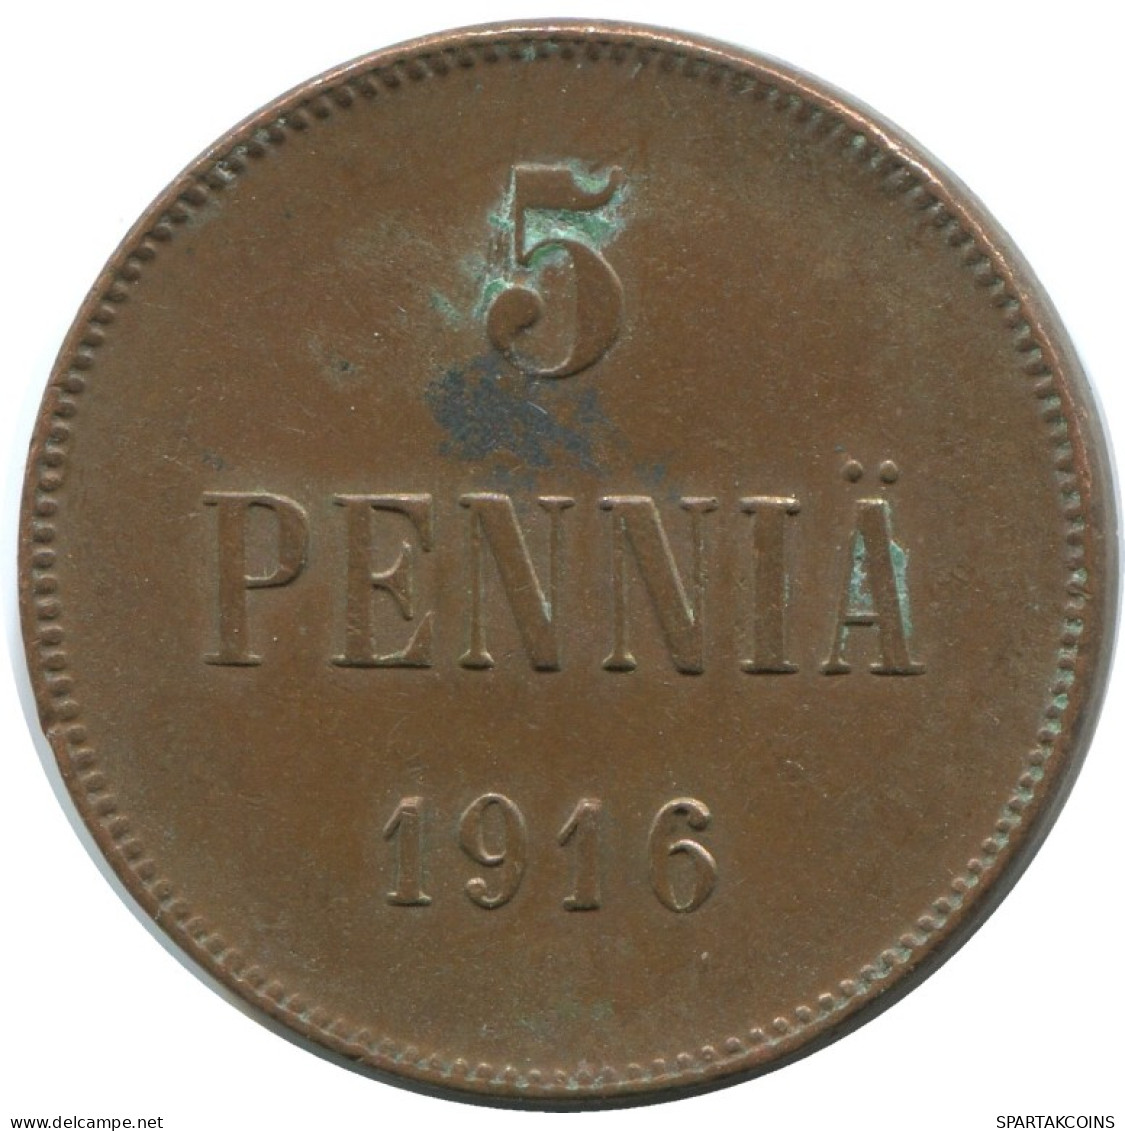 5 PENNIA 1916 FINLANDIA FINLAND Moneda RUSIA RUSSIA EMPIRE #AB184.5.E.A - Finlande